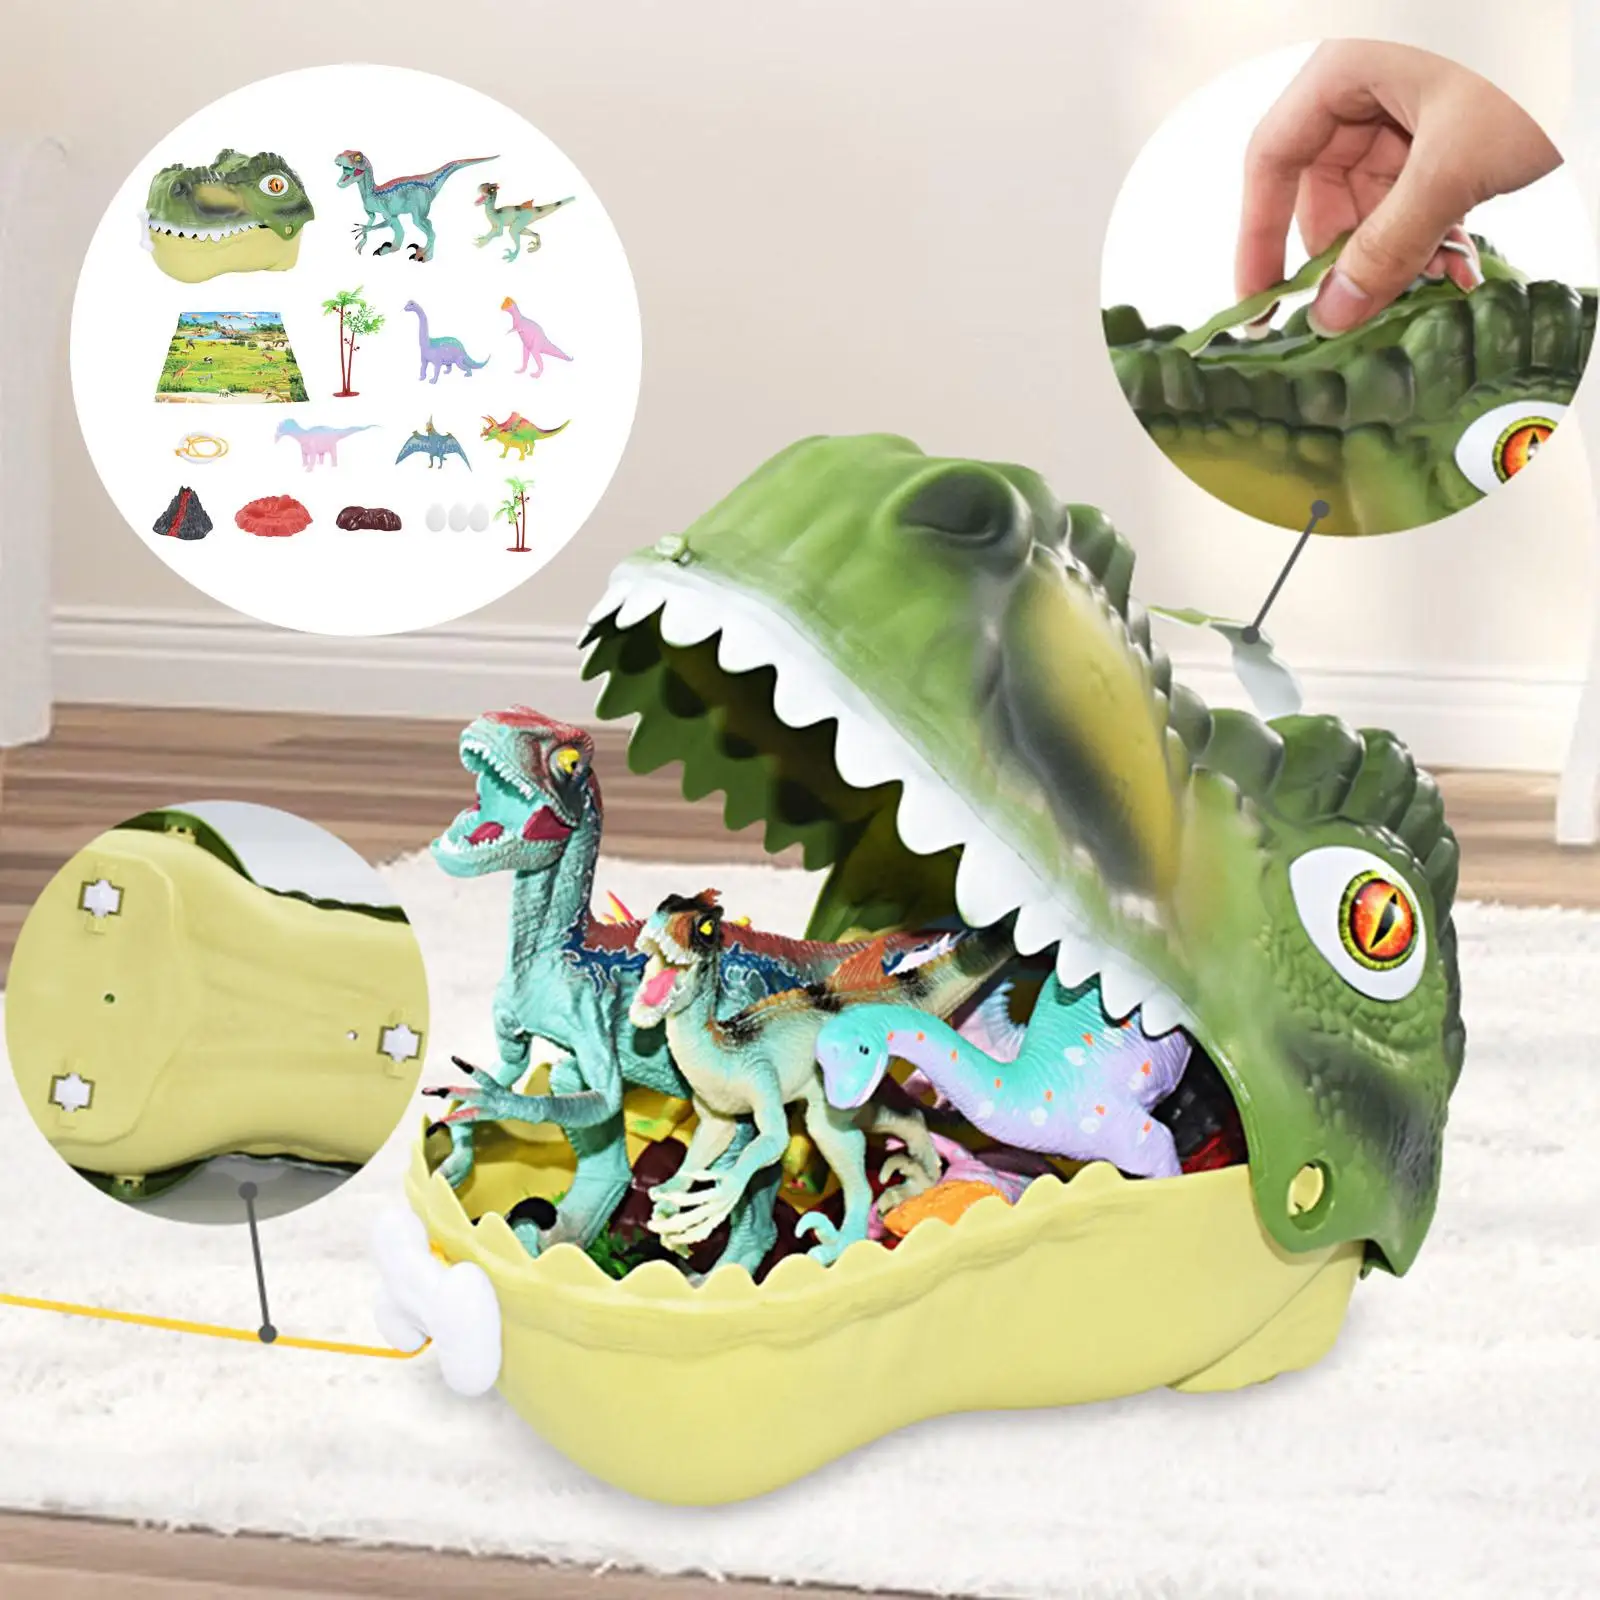 

Игрушки-Динозавры с картой, набор мини-фигурок динозавров, фигурки, модели, игрушки для подарка на день рождения